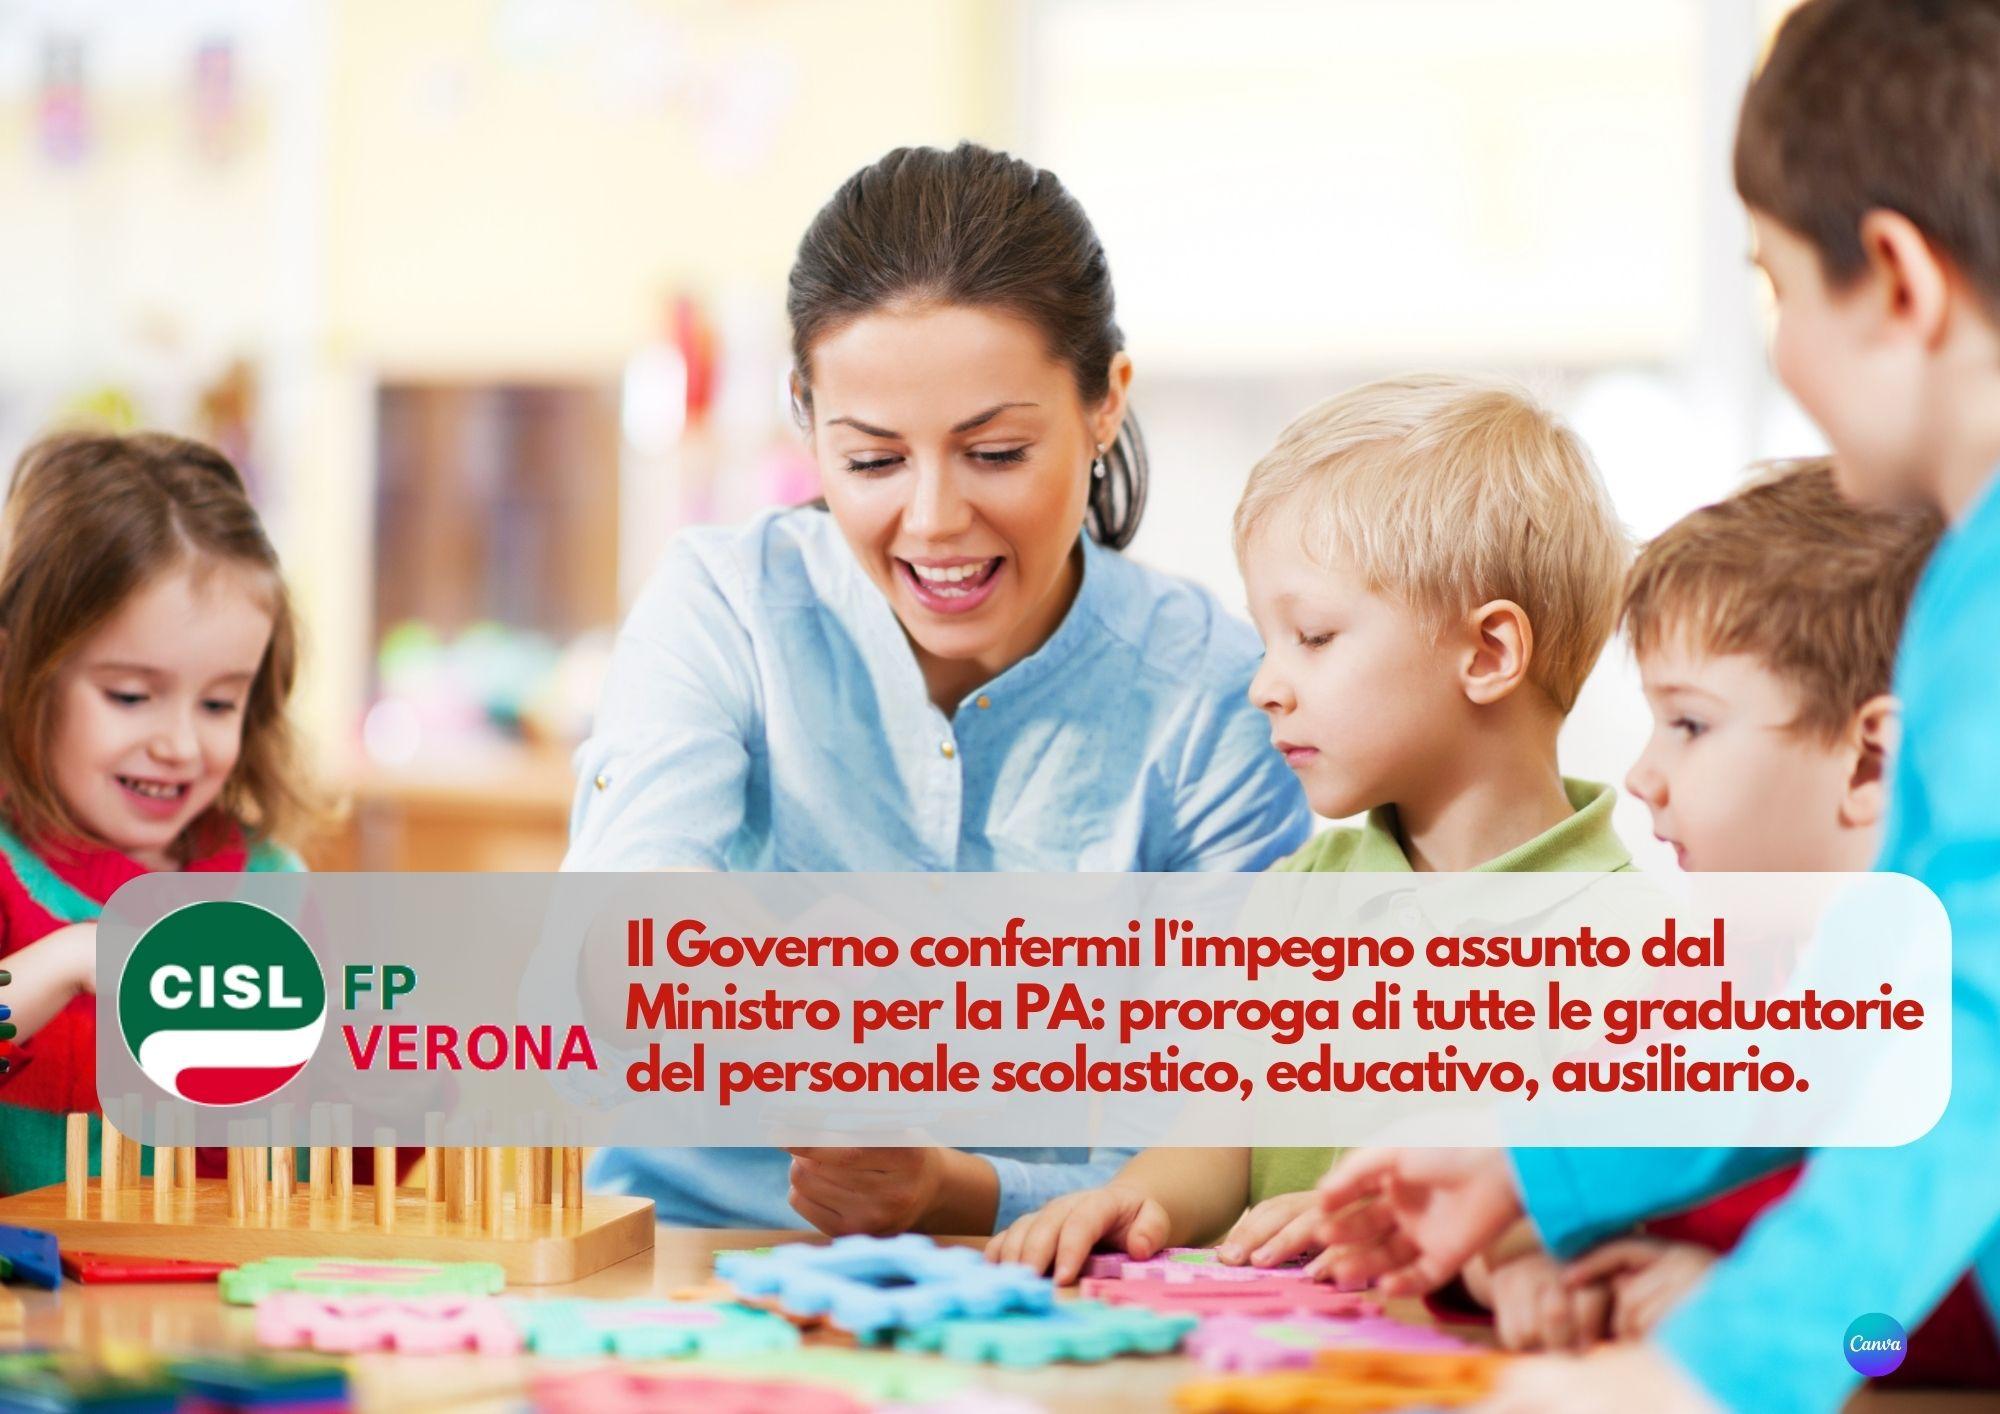 CISL FP Verona. Il Governo confermi proroga graduatorie personale scolastico, educativo, ausiliario